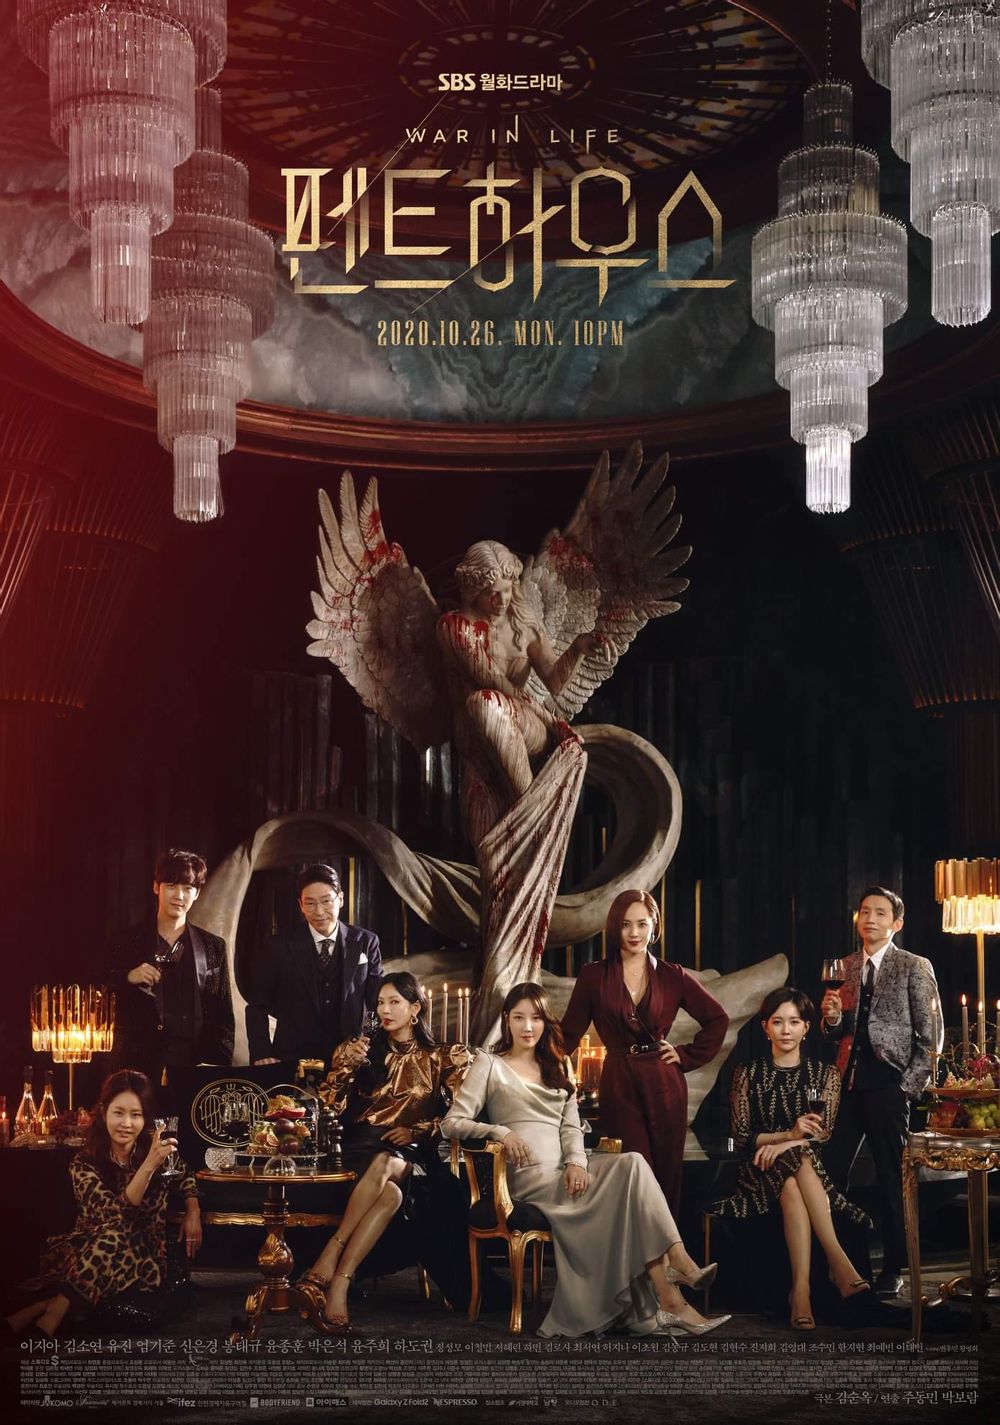 SBS 'Penthouse' Season 2, Season 3, Season 3, premiere on February 28